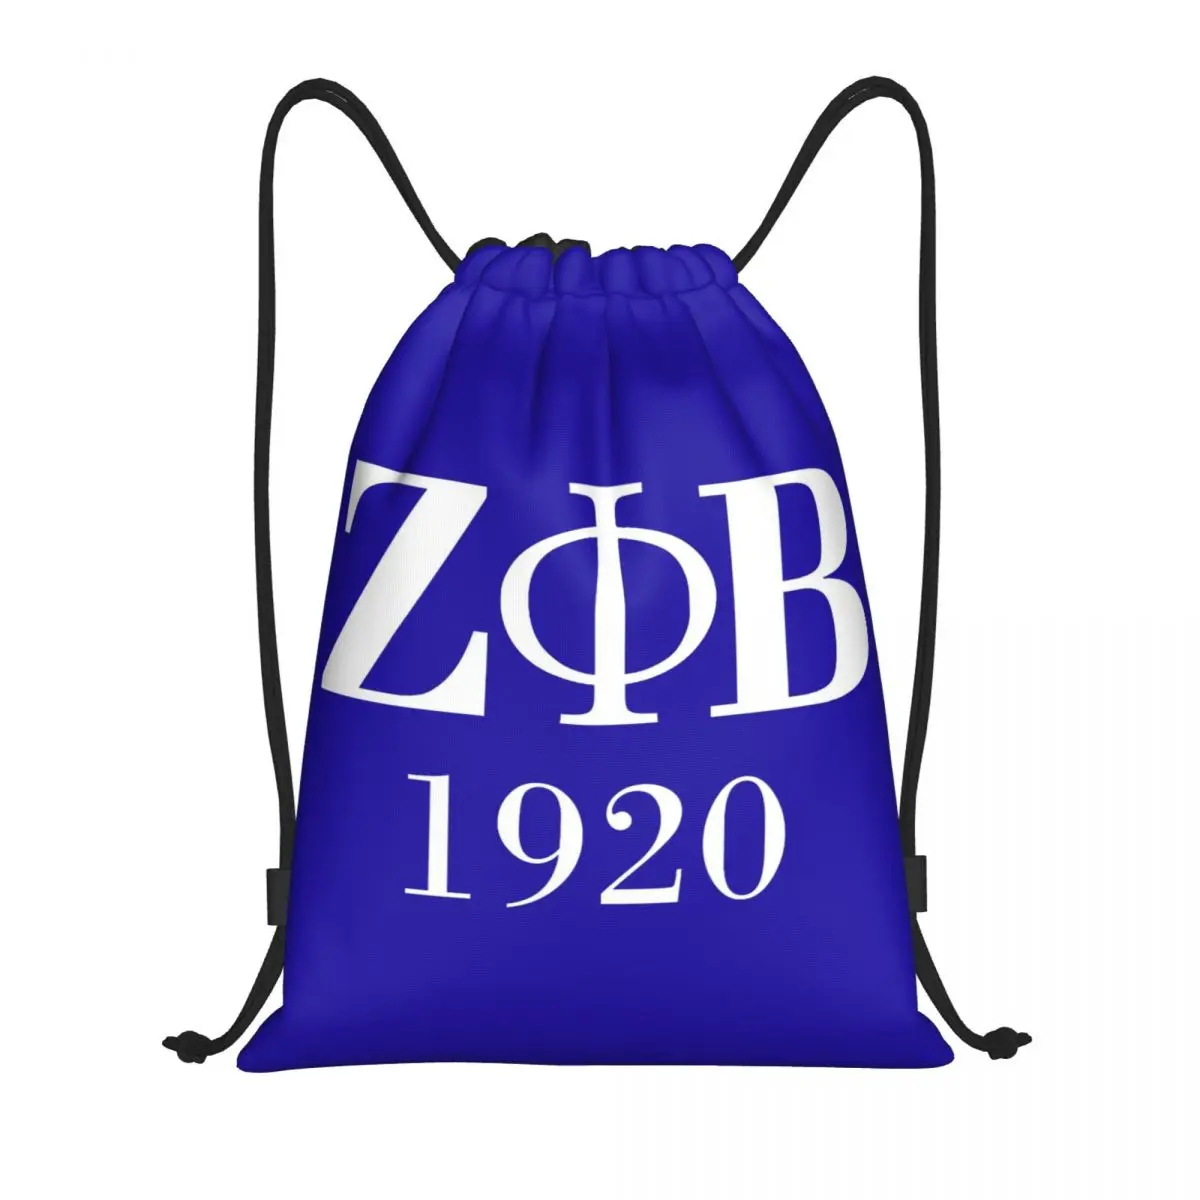 Рюкзак с логотипом женского общества Zeta Phi Beta, спортивная спортивная сумка для женщин, мужчин, Греческая буква 1920, Тренировочный рюкзак